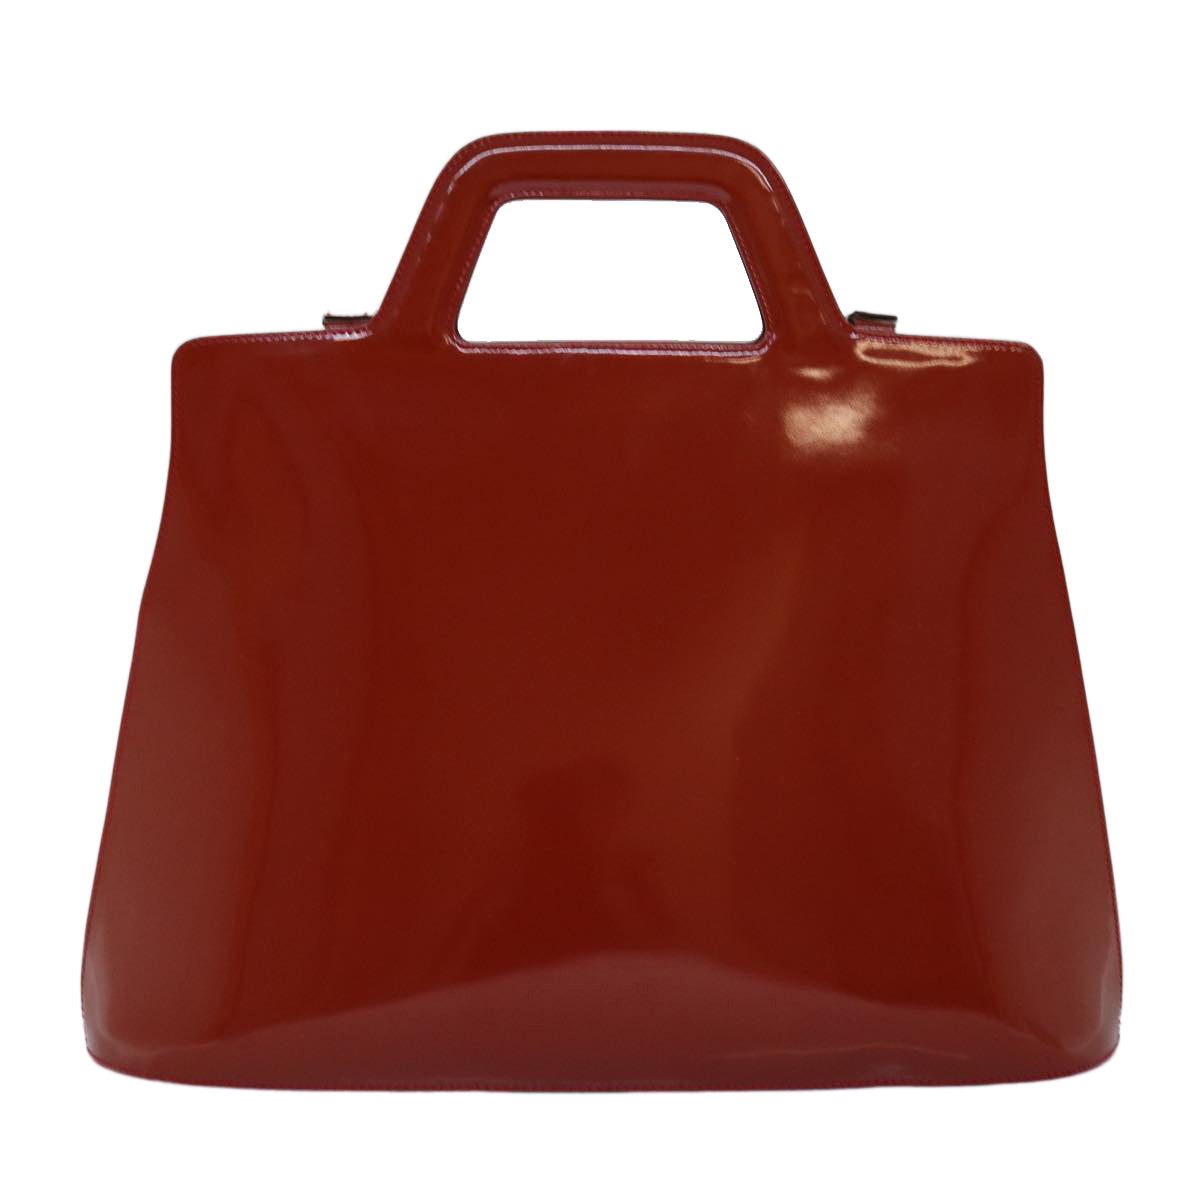 Salvatore Ferragamo Hand Bag Patent leather 2way Orange Auth 73990 - 0